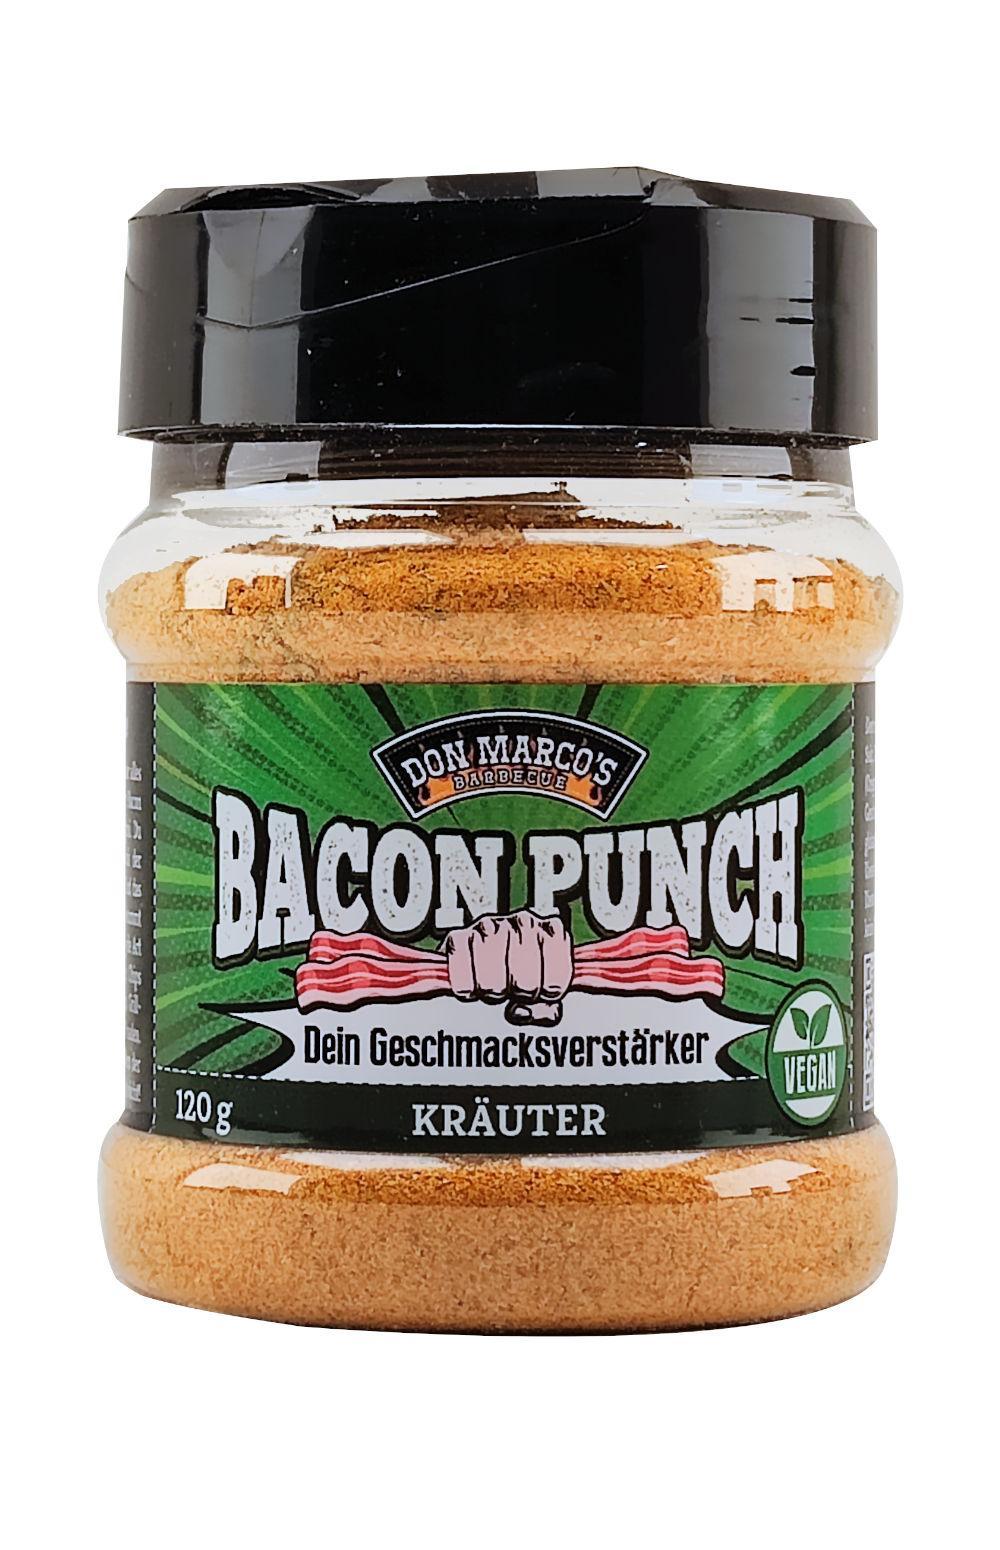 Bacon Punch Kräuter in PET Dose vor weißem Hintergrund